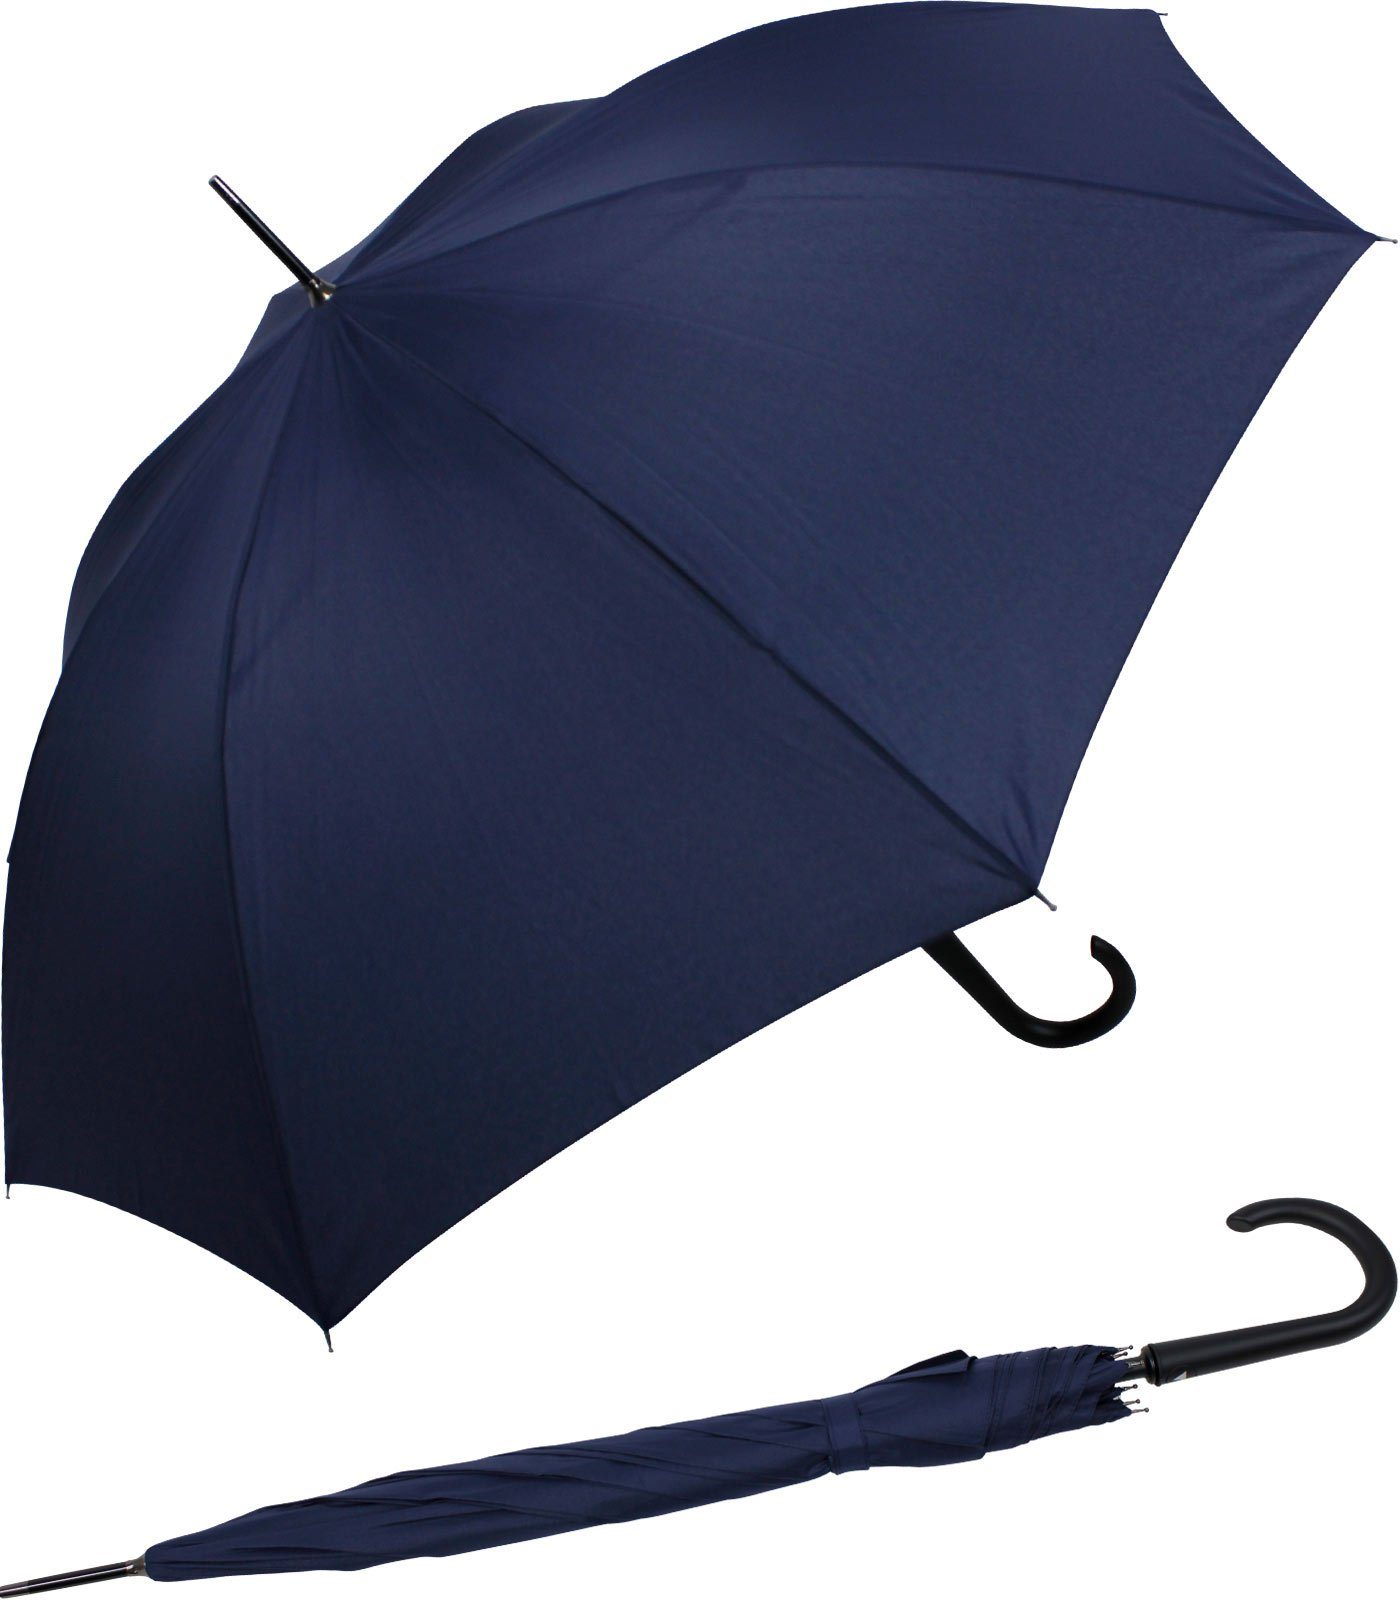 Auf-Automatik, großer RS-Versand Auslöseknopf navy-blau stabiler mit Stahl-Fiberglas-Gestell, Regenschirm integrierter Langregenschirm